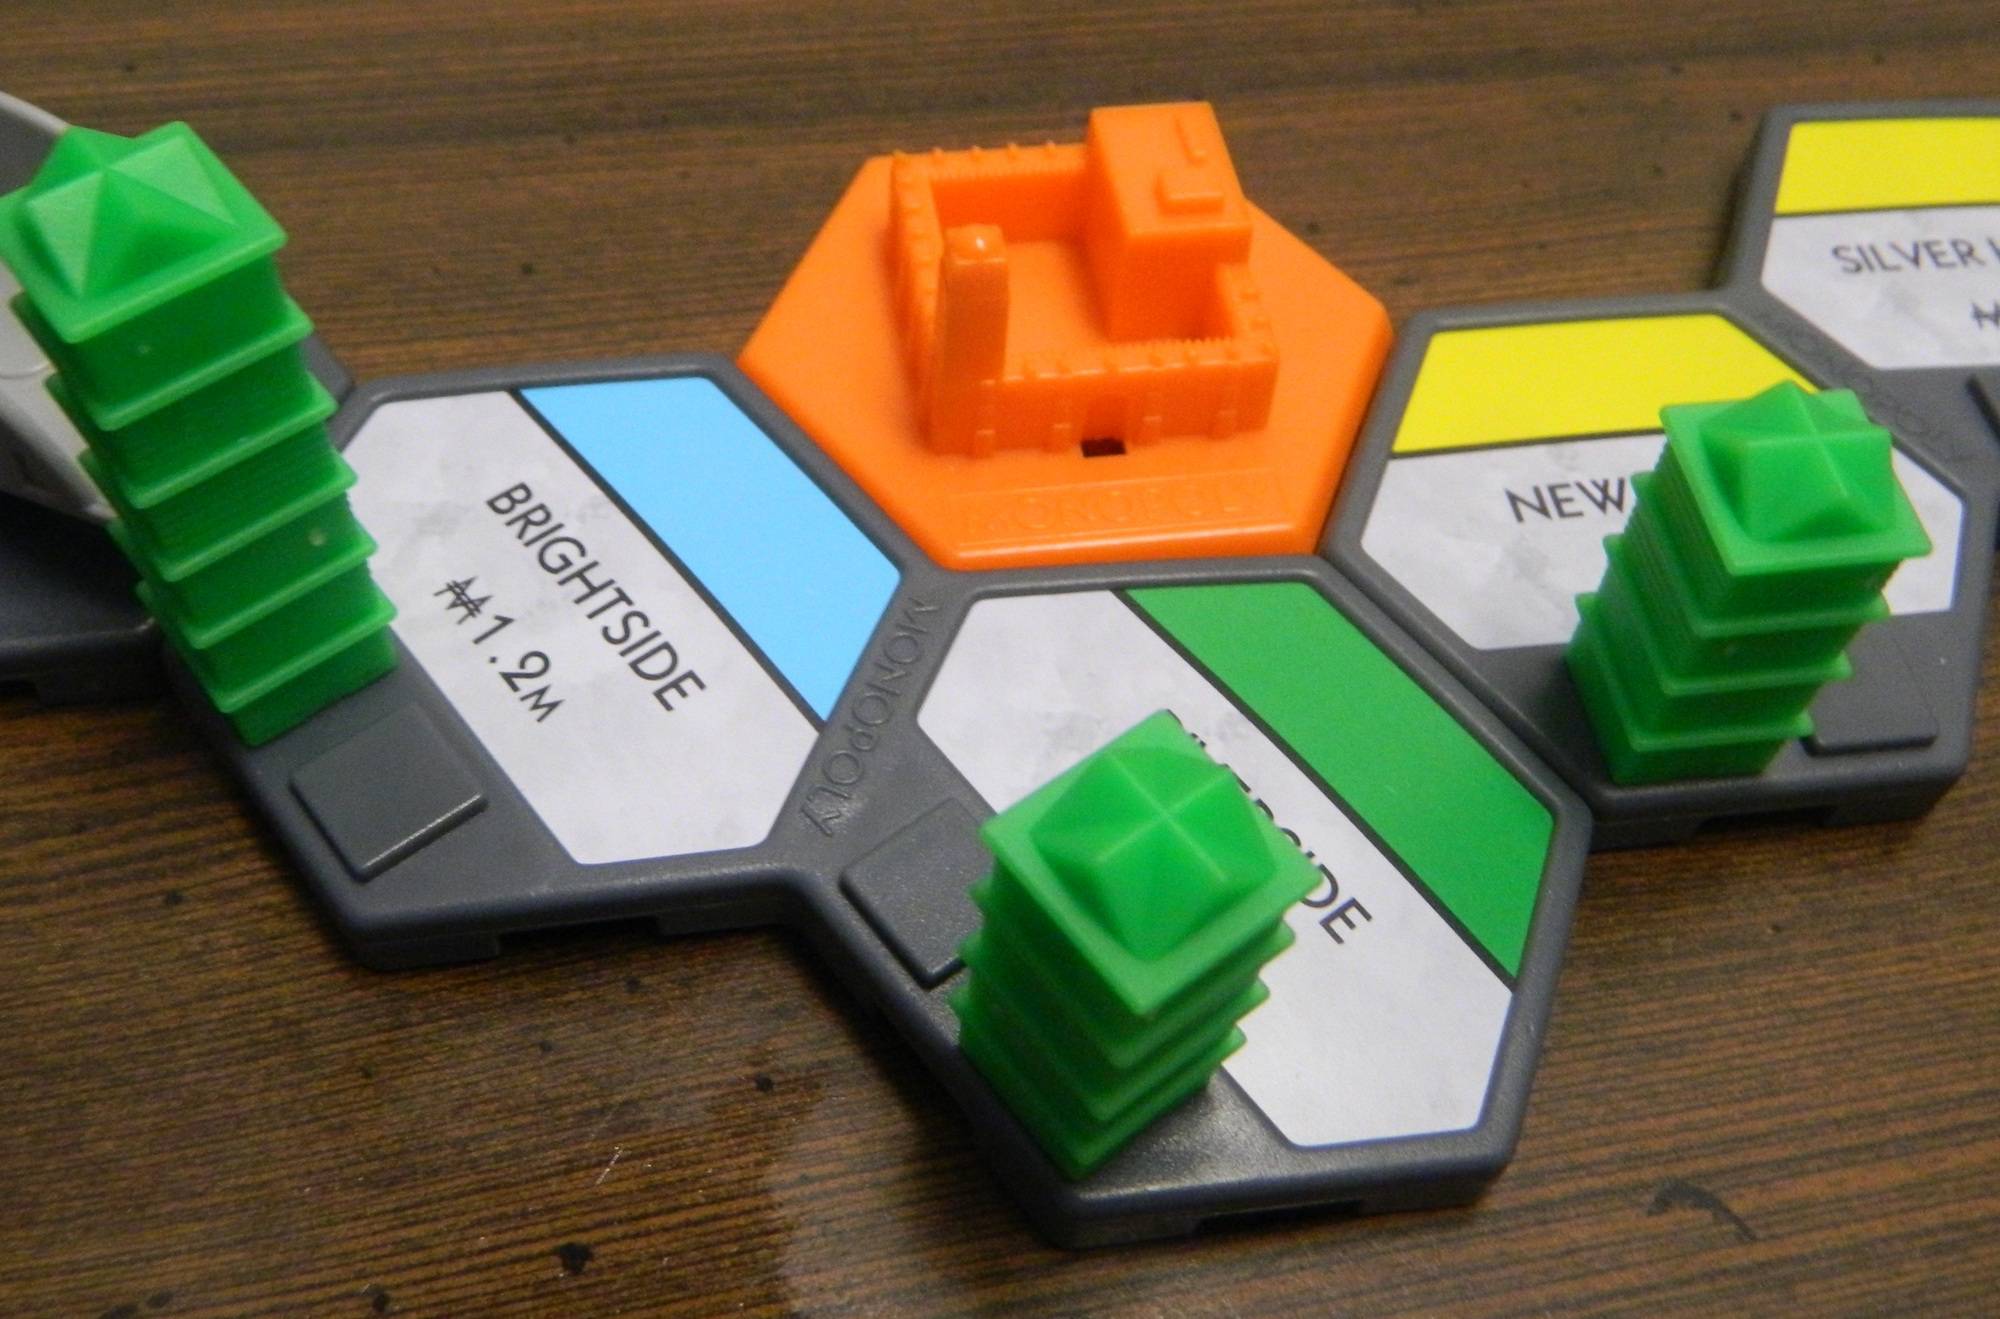 U-PICK U-Build Monopoly parts pieces cards districts buildings tiles